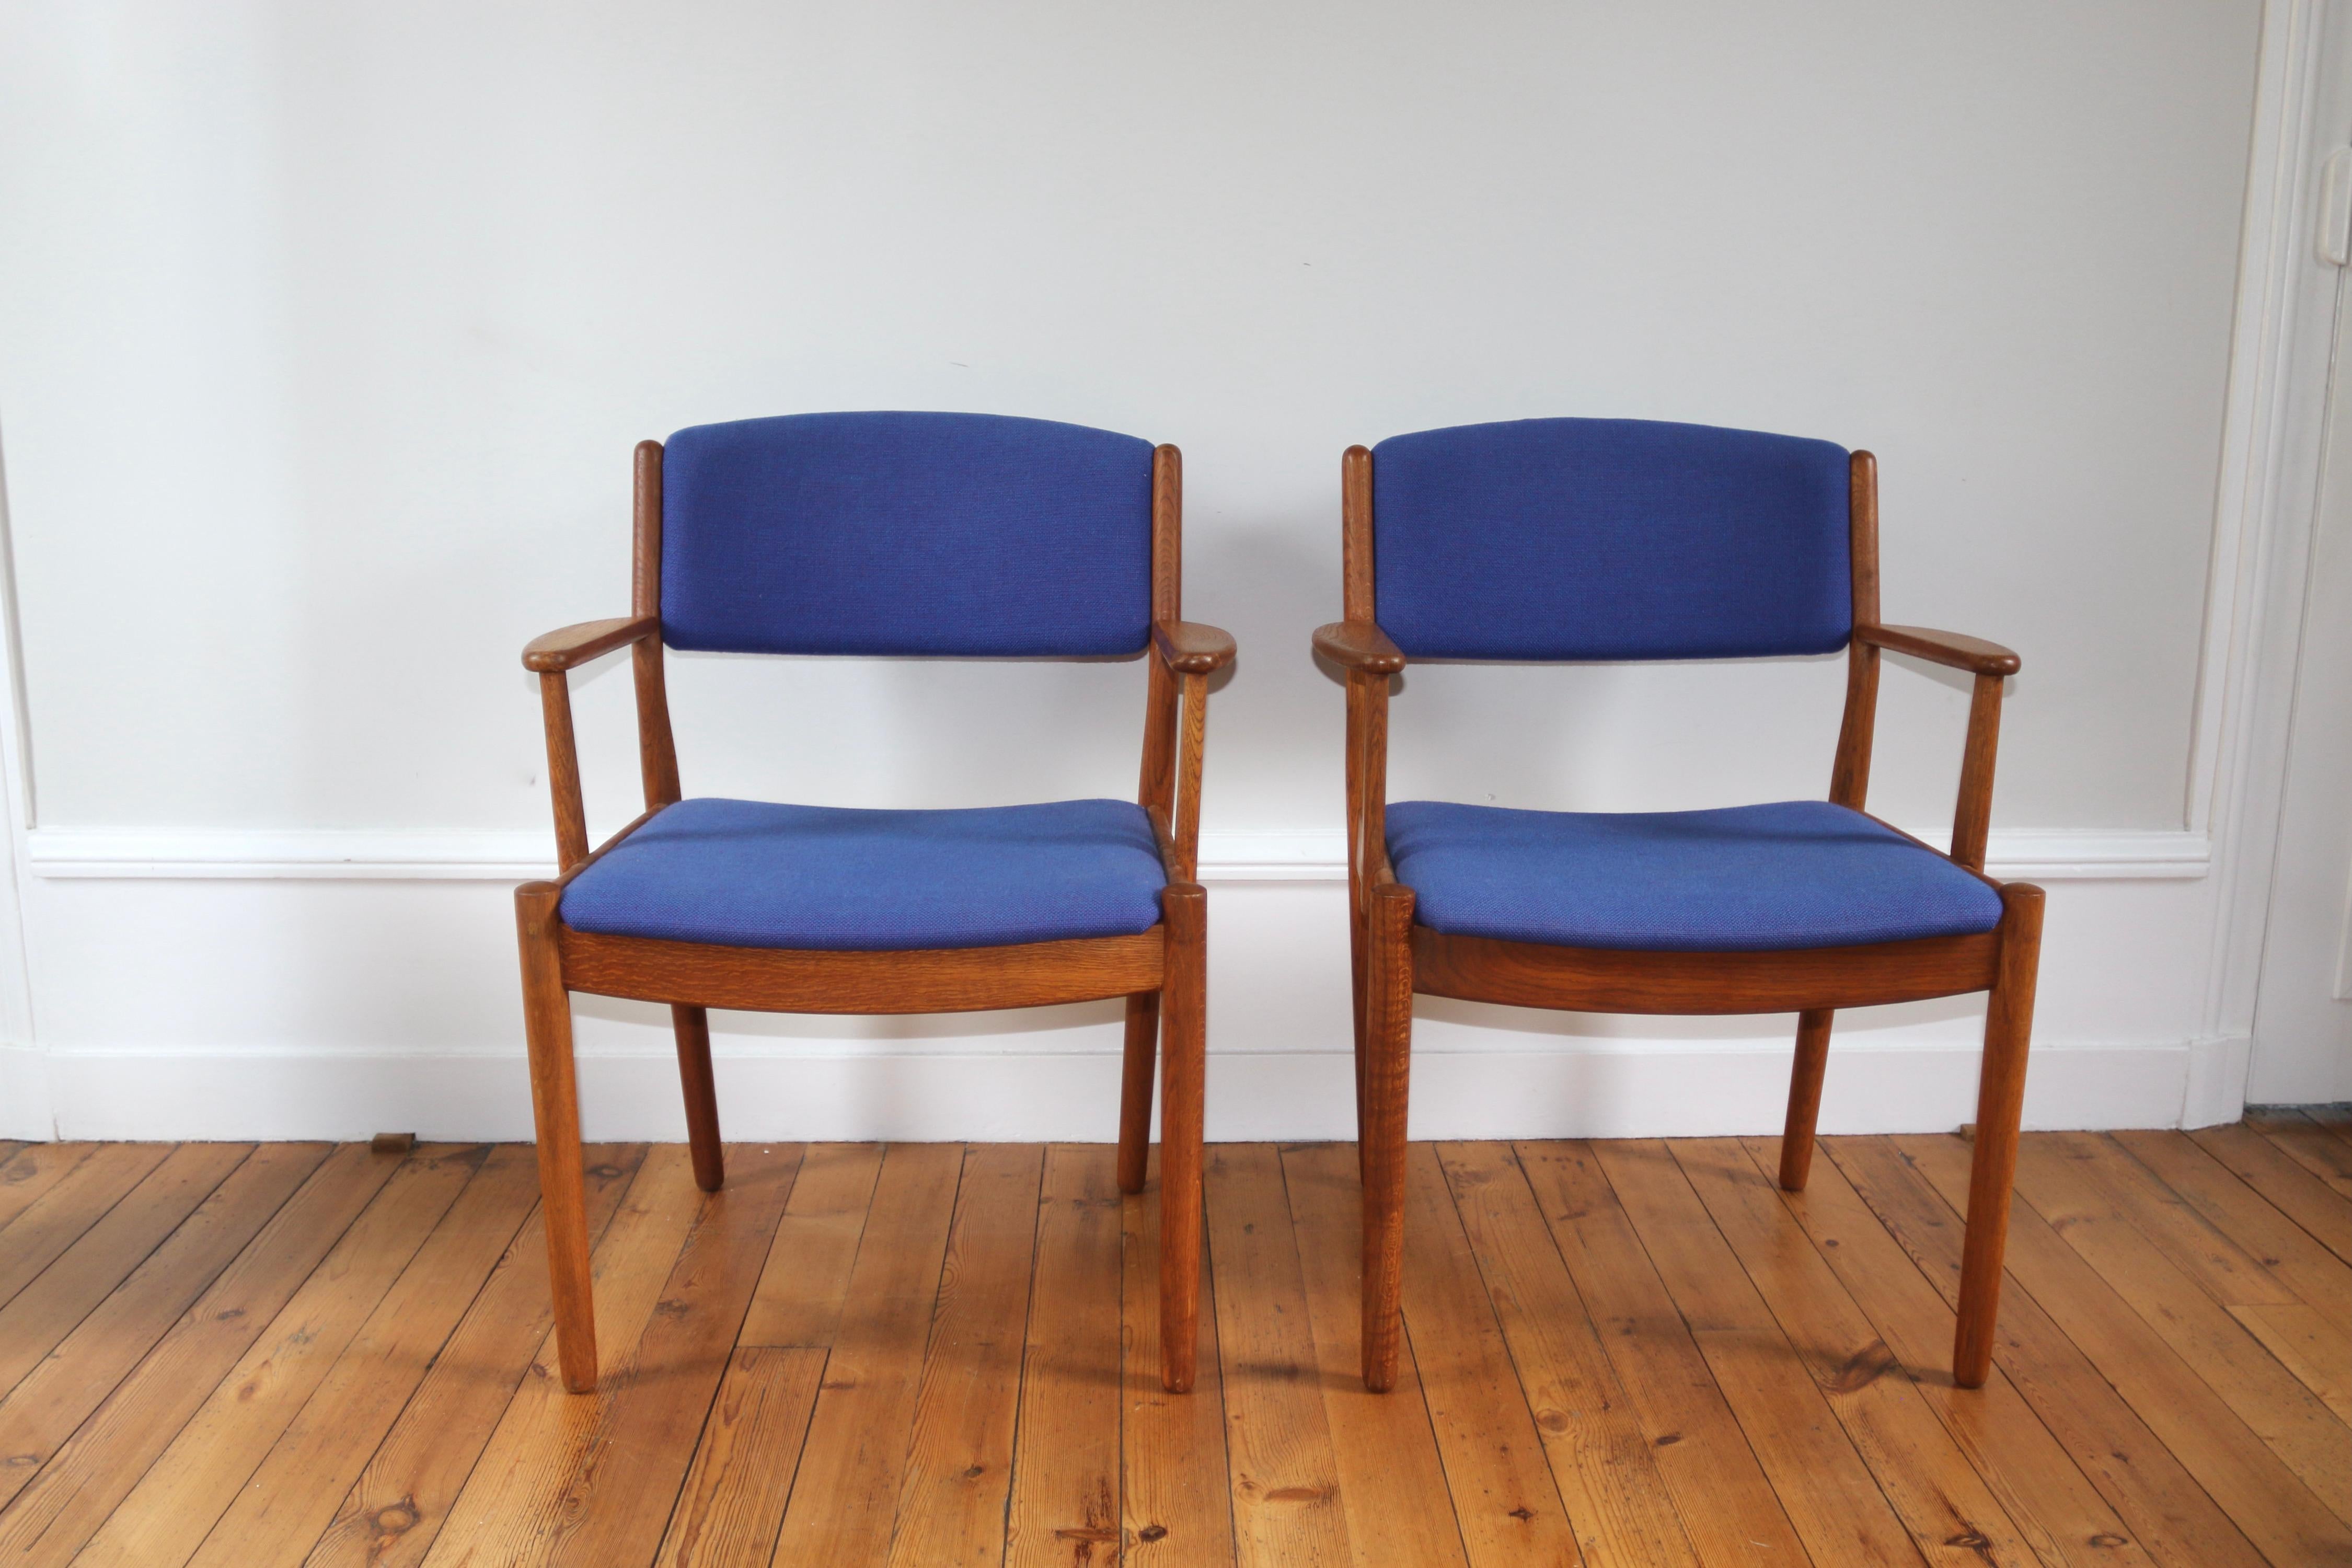 Paire de fauteuils scandinaves en chêne signés Poul Volther pour FDB dans les années 60
Modèle J72

en très bon état
tissu refait à neuf

dimensions : hauteur 84 cm x largeur 66 cm x profondeur 49 cm